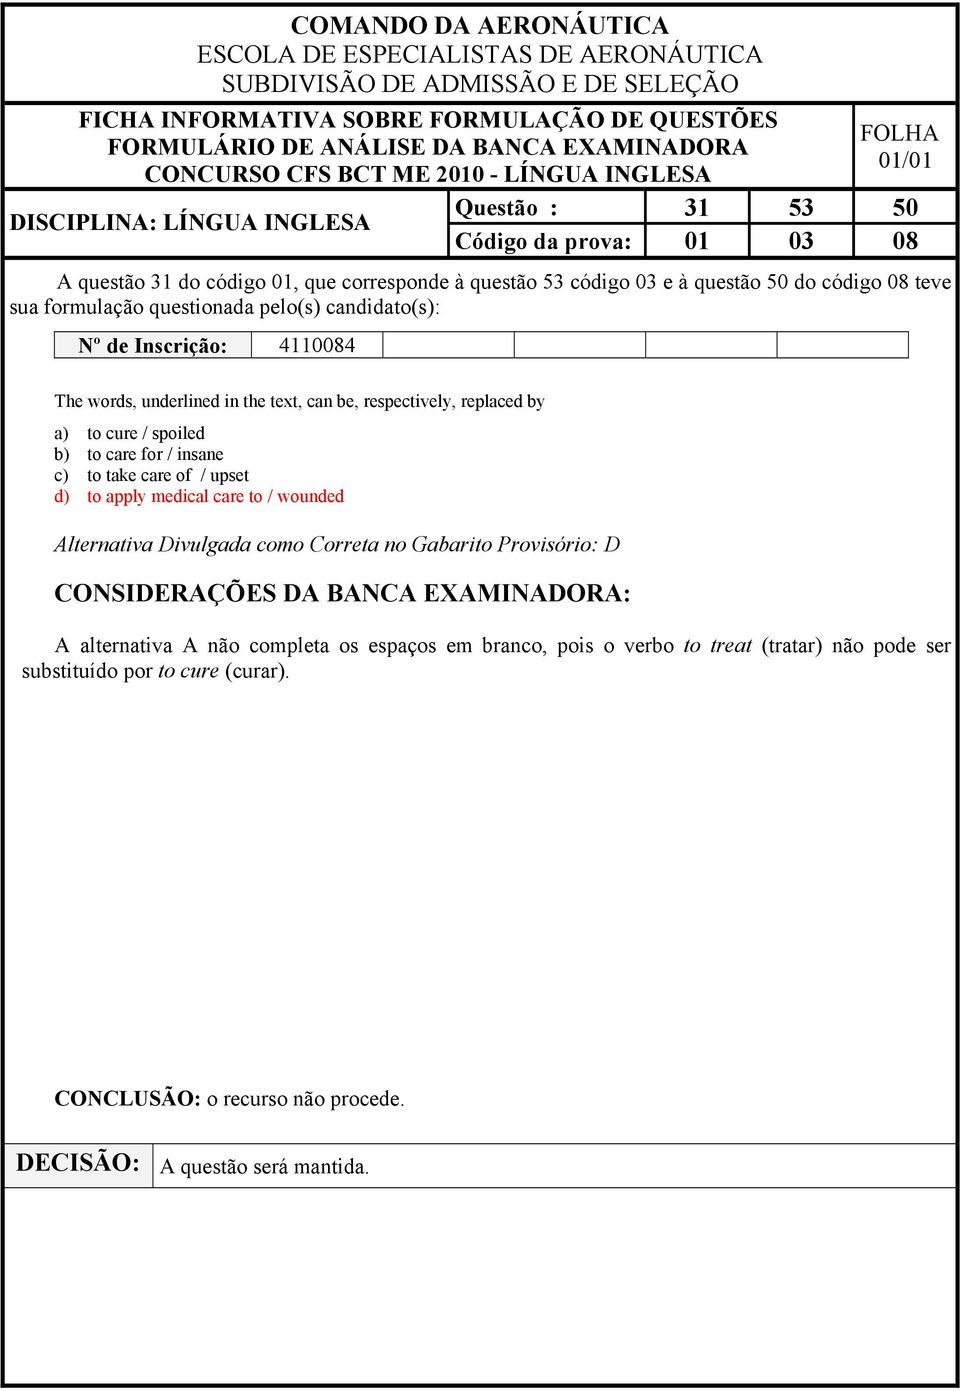 insane c) to take care of / upset d) to apply medical care to / wounded Alternativa Divulgada como Correta no Gabarito